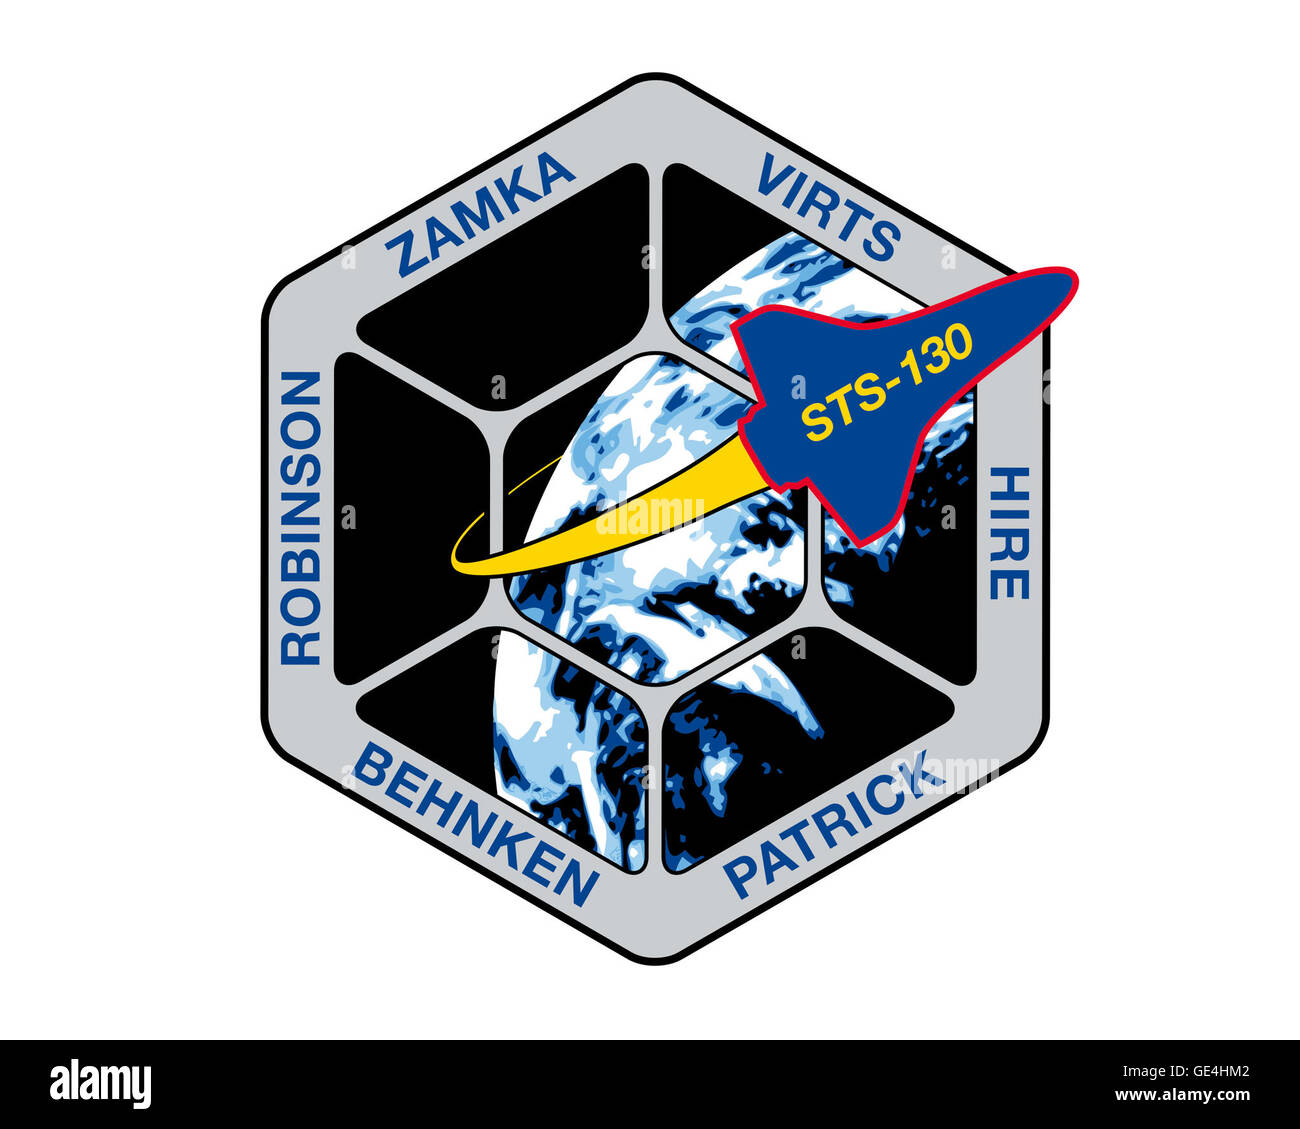 Lanzamiento: 8 de febrero de 2010, 4:14 am EST Desembarque: Febrero 21, 2010, 10:20 pm EST, el Centro Espacial Kennedy Space Shuttle Endeavour: Tripulación: comandante George D. Zamka, el piloto Terry W. Virts Jr., especialistas de misión Nicholas J. M. Patrick, Robert L. Behnken, Stephen K. Robinson, Kathryn P. CONTRATAR EL STS-130 del propósito de la misión era instalar los dos últimos componentes del segmento estadounidense de la Estación Espacial Internacional. STS-130 entregado e instalado el nuevo nodo tranquilidad y la cúpula, que ahora ofrece a los astronautas un siete ventana, unas vistas impresionantes. Los miembros de la tripulación se tomó un tiempo para recibir un teléfono cal Foto de stock